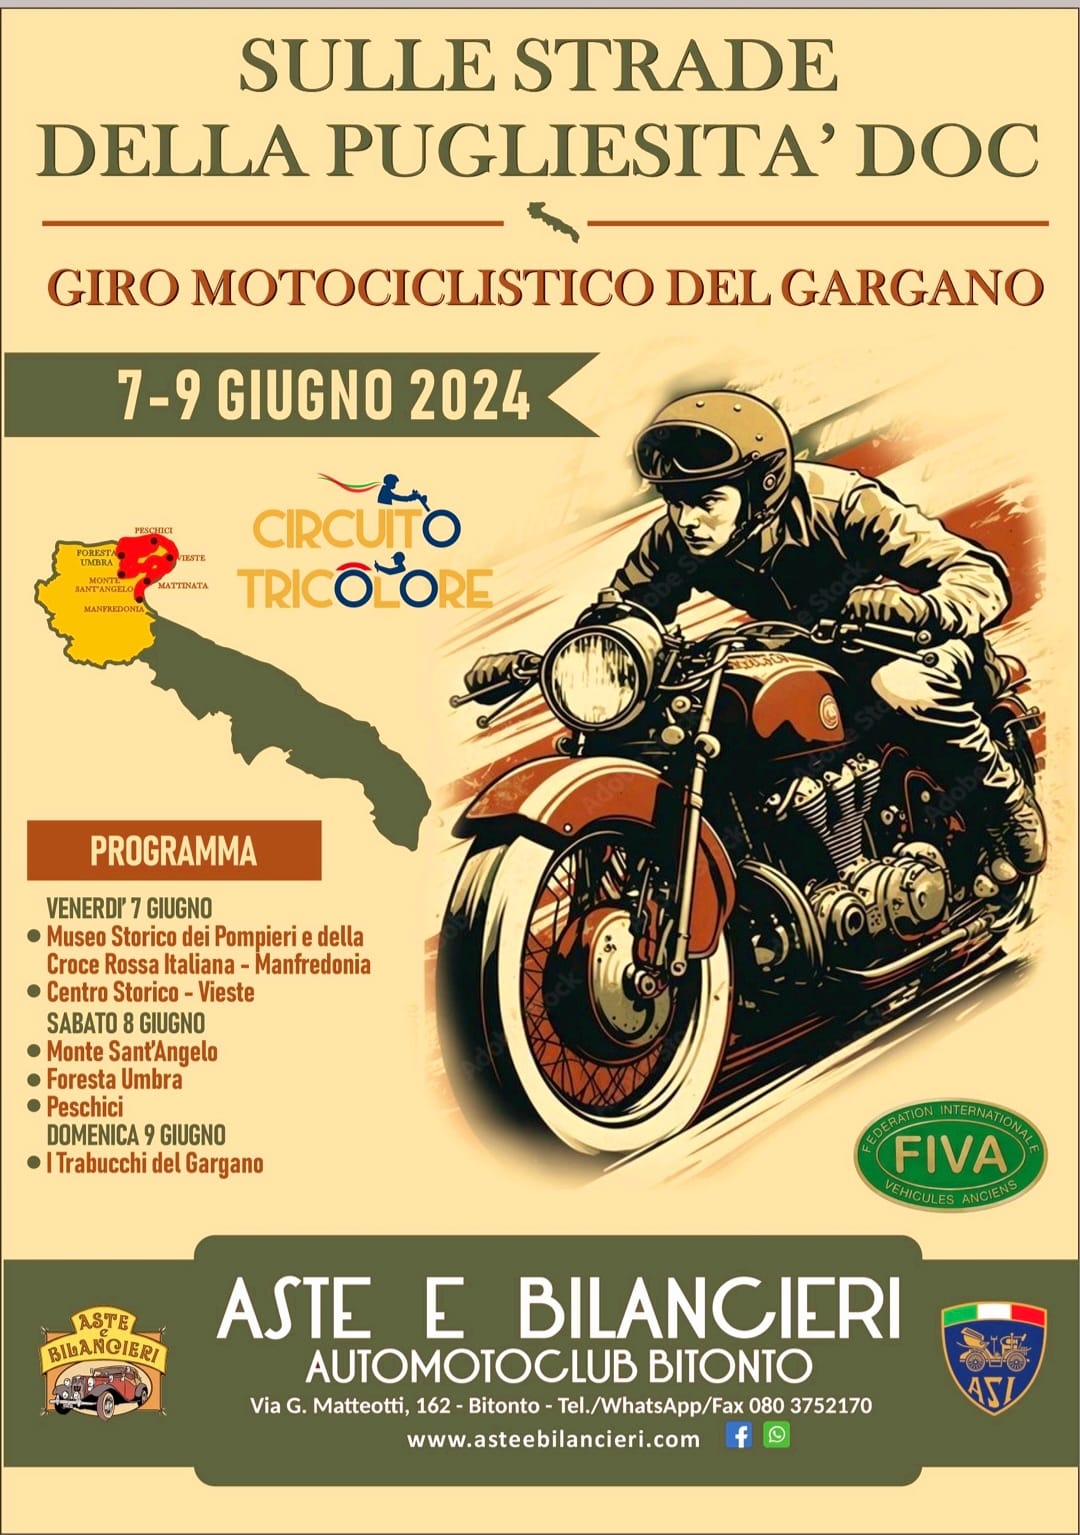 Il giro motociclistico del Gargano arriva al Museo storico dei Pompieri e della Croce Rossa Italiana di Manfredonia